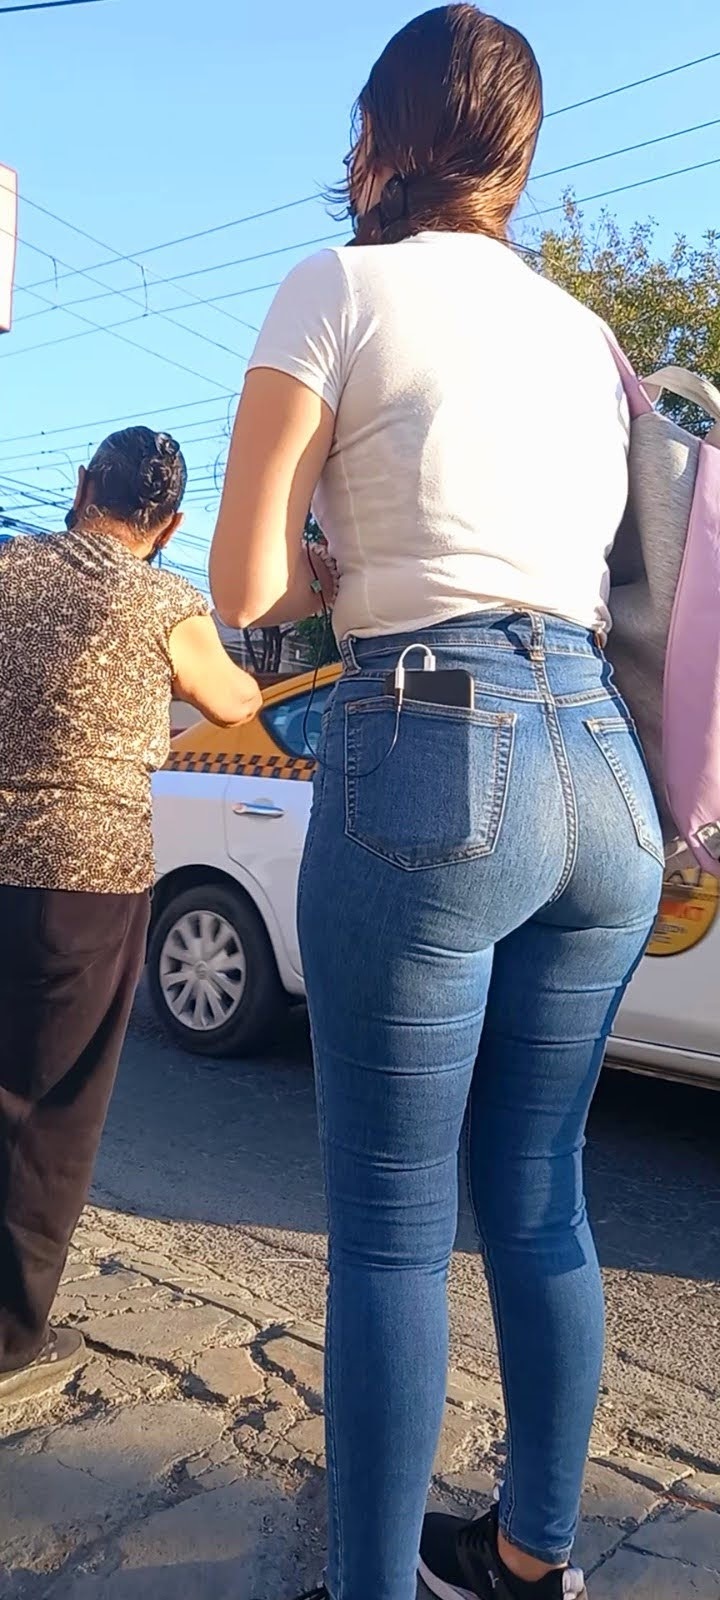 Linda Chica En Jeans Apretados Esperando El Bus Mujeres Bellas En La